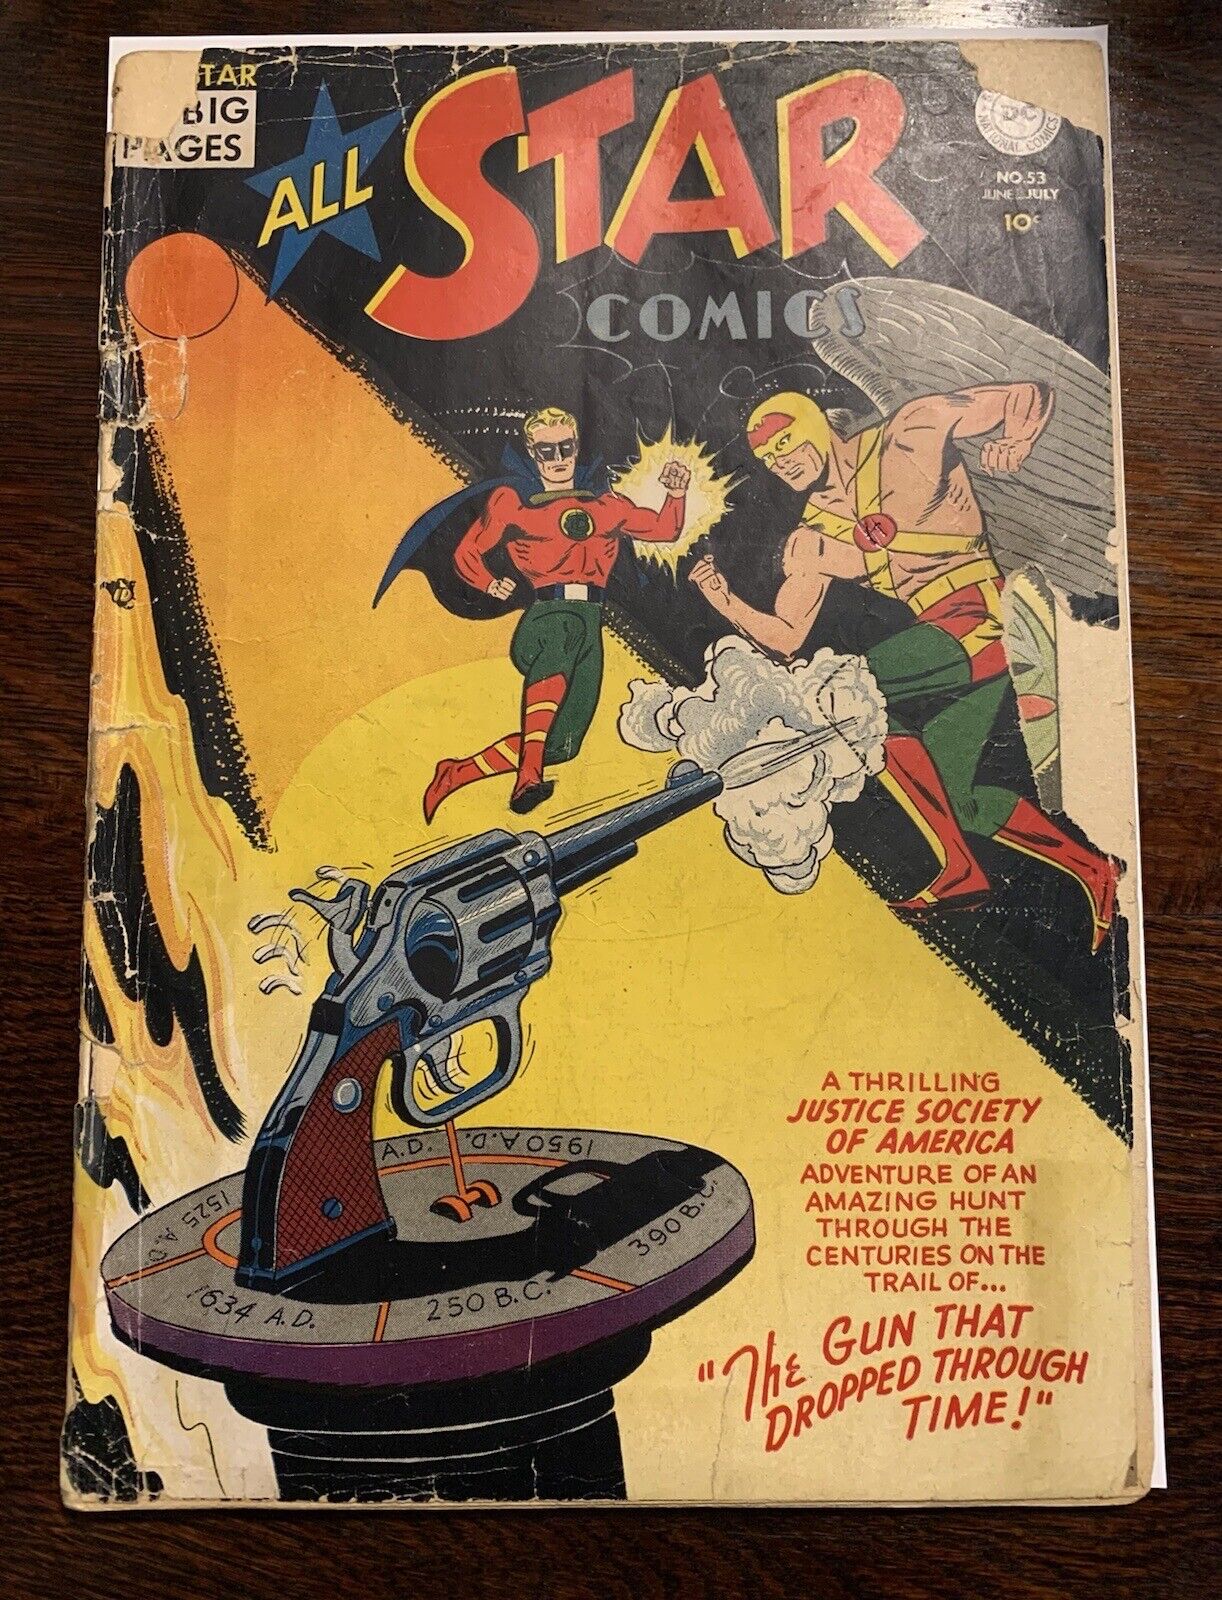 🟨 All Star Comics #53 DC Wonder Woman Green Lantern Flash Hawkman JSA 1950 ⬛️